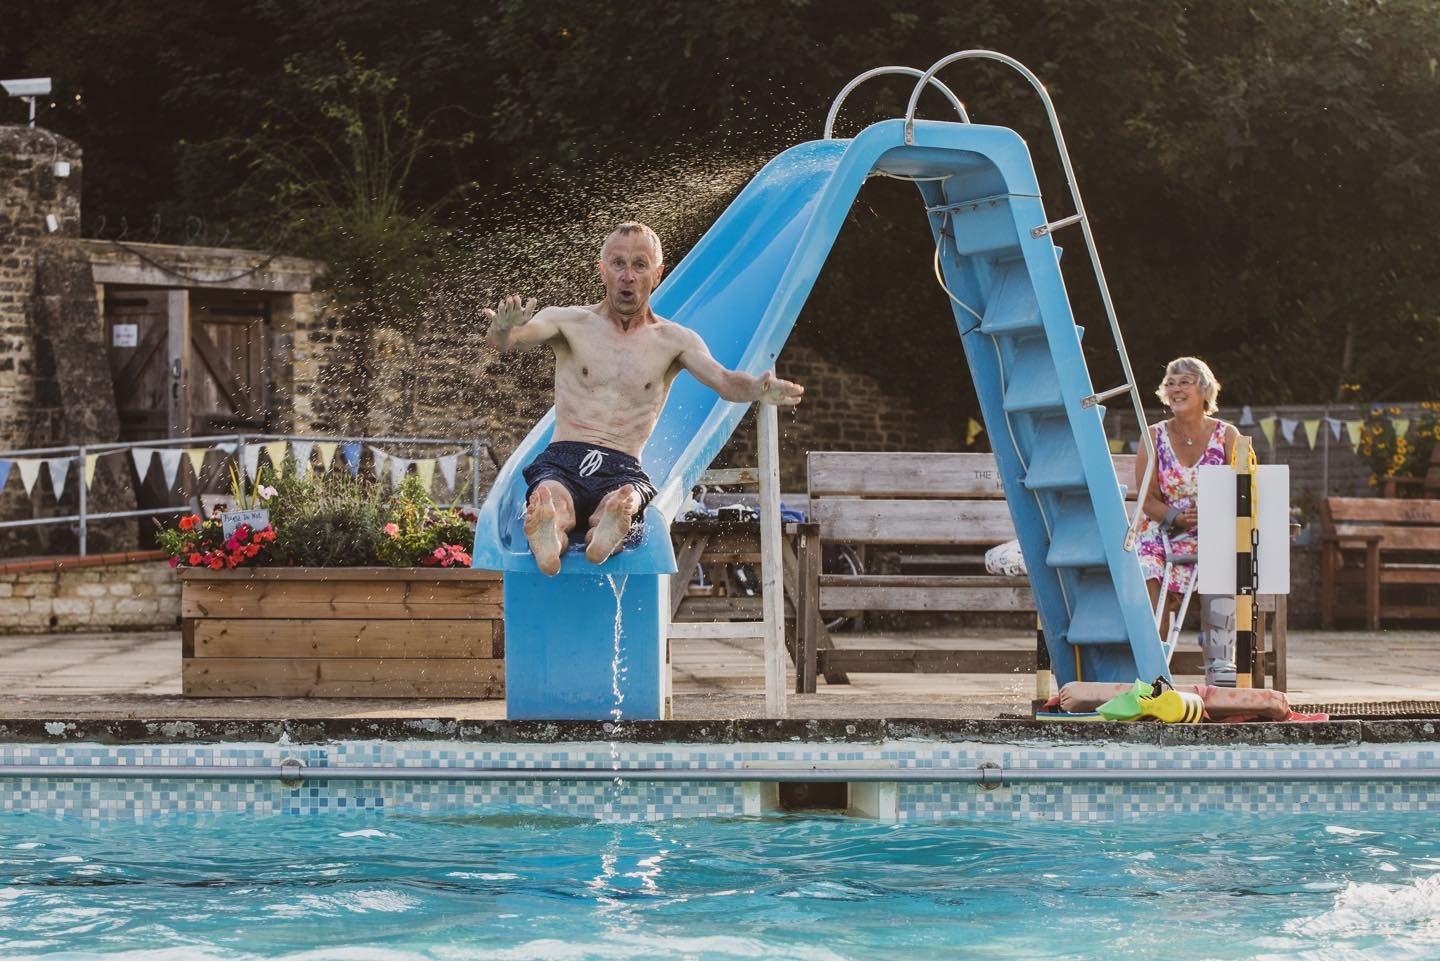 Pool Fun - Cirencester Open Air Swimming Pool